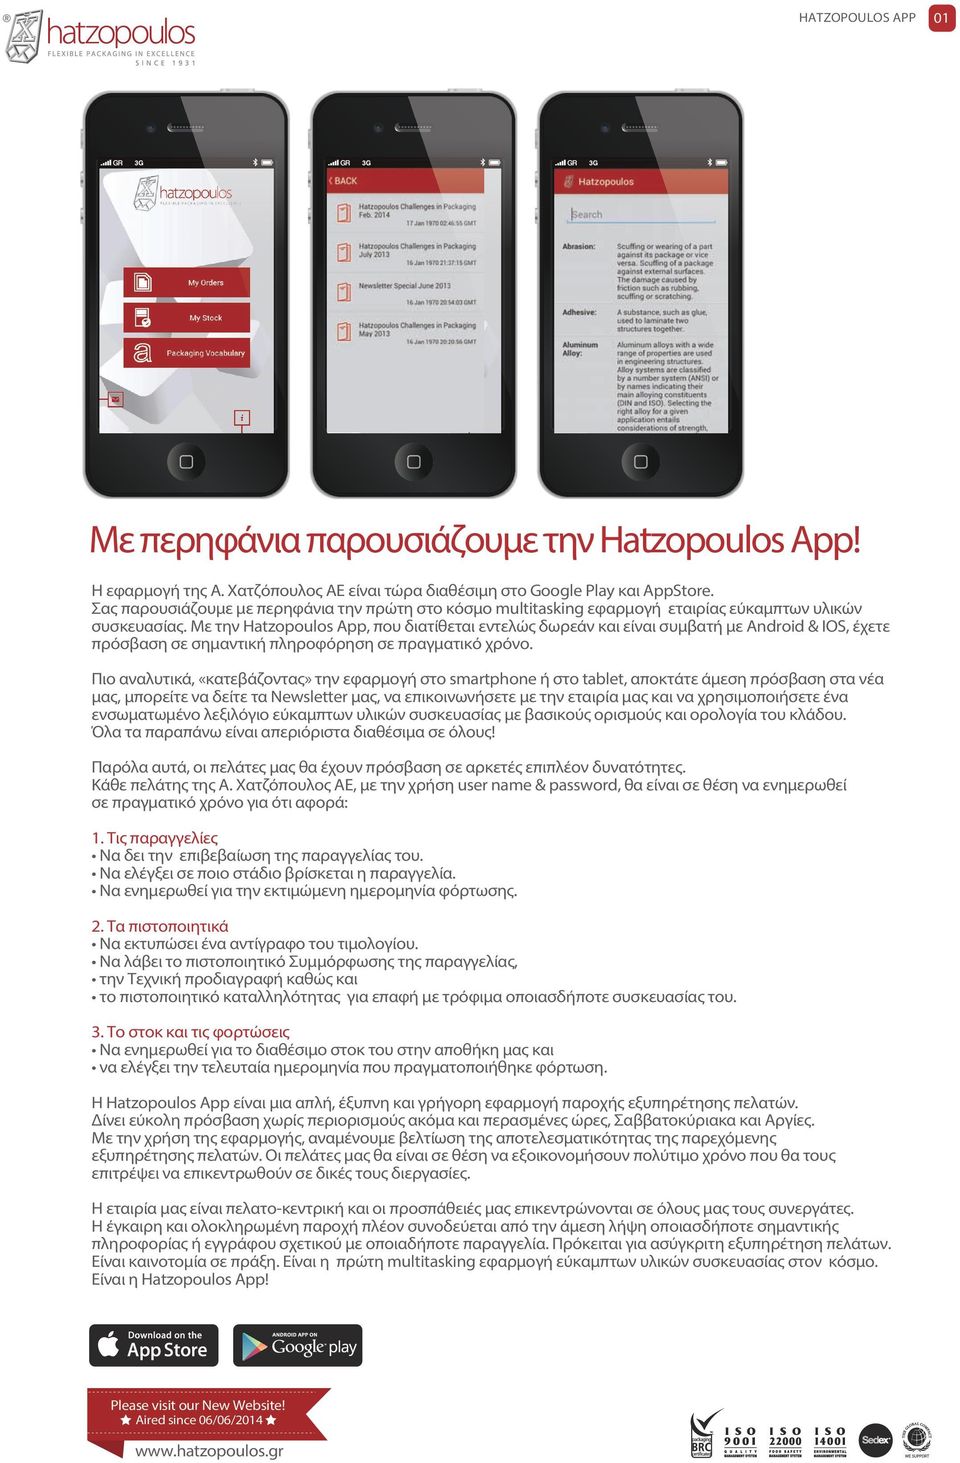 Με την Hatzopoulos App, που διατίθεται εντελώς δωρεάν και είναι συμβατή με Android & IOS, έχετε πρόσβαση σε σημαντική πληροφόρηση σε πραγματικό χρόνο.